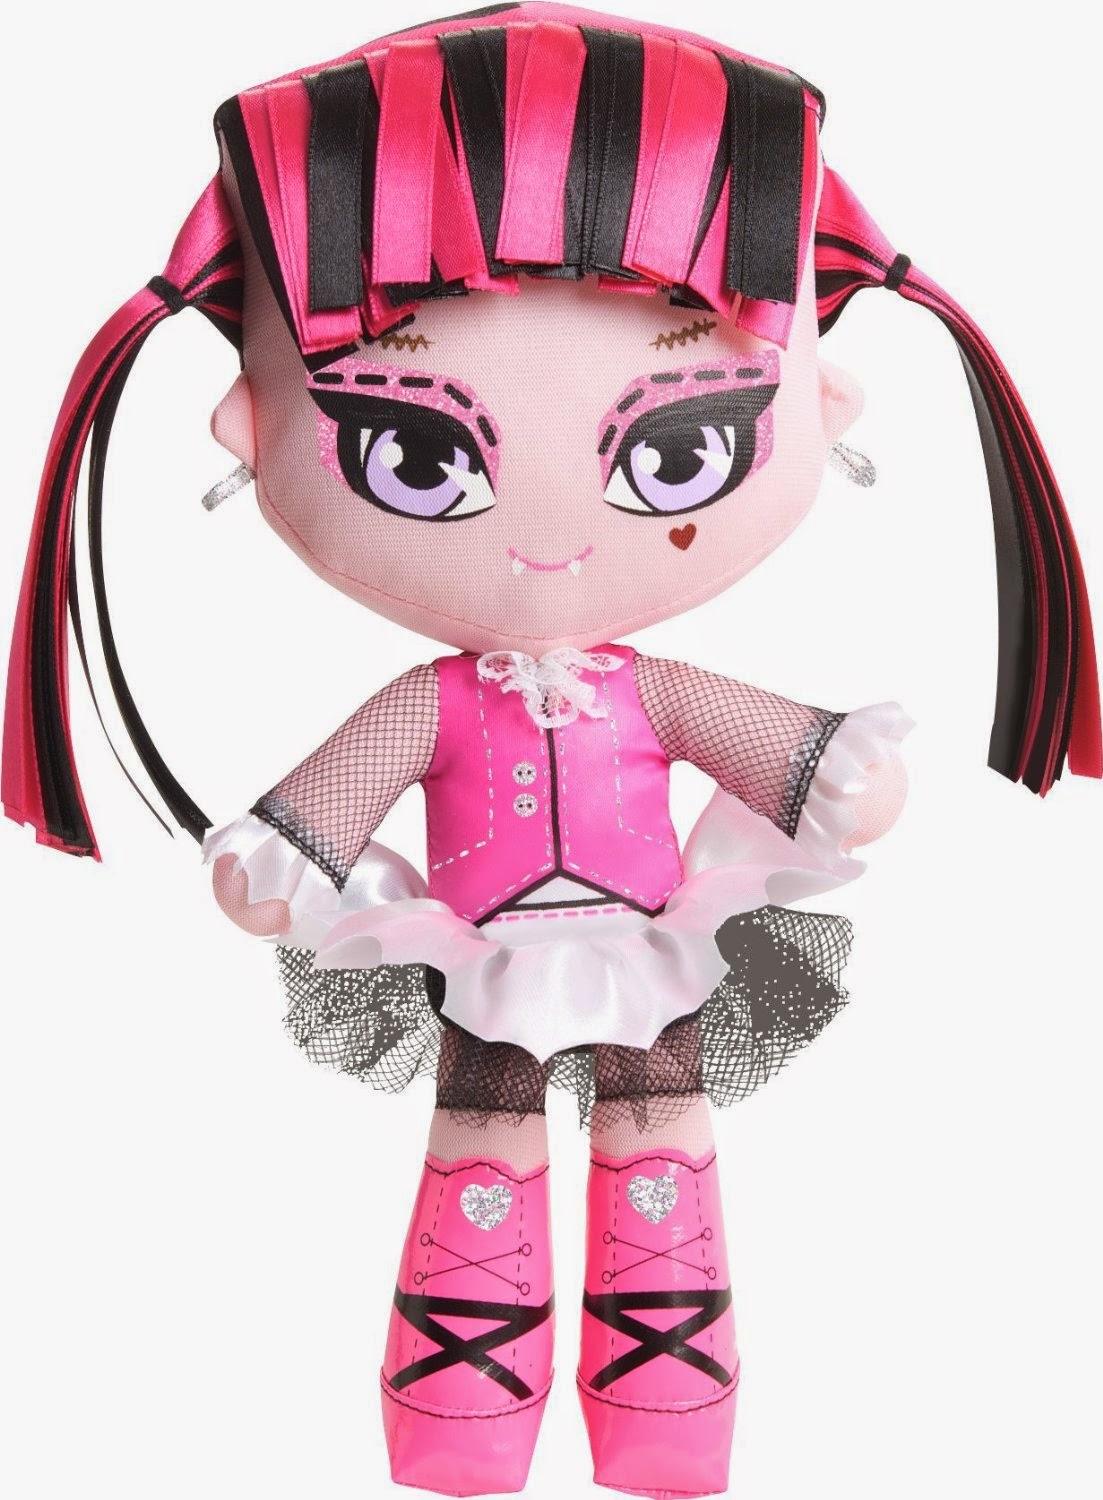 Ghoulia Monster High Doll: Ghoulia Monster High Stylized ...